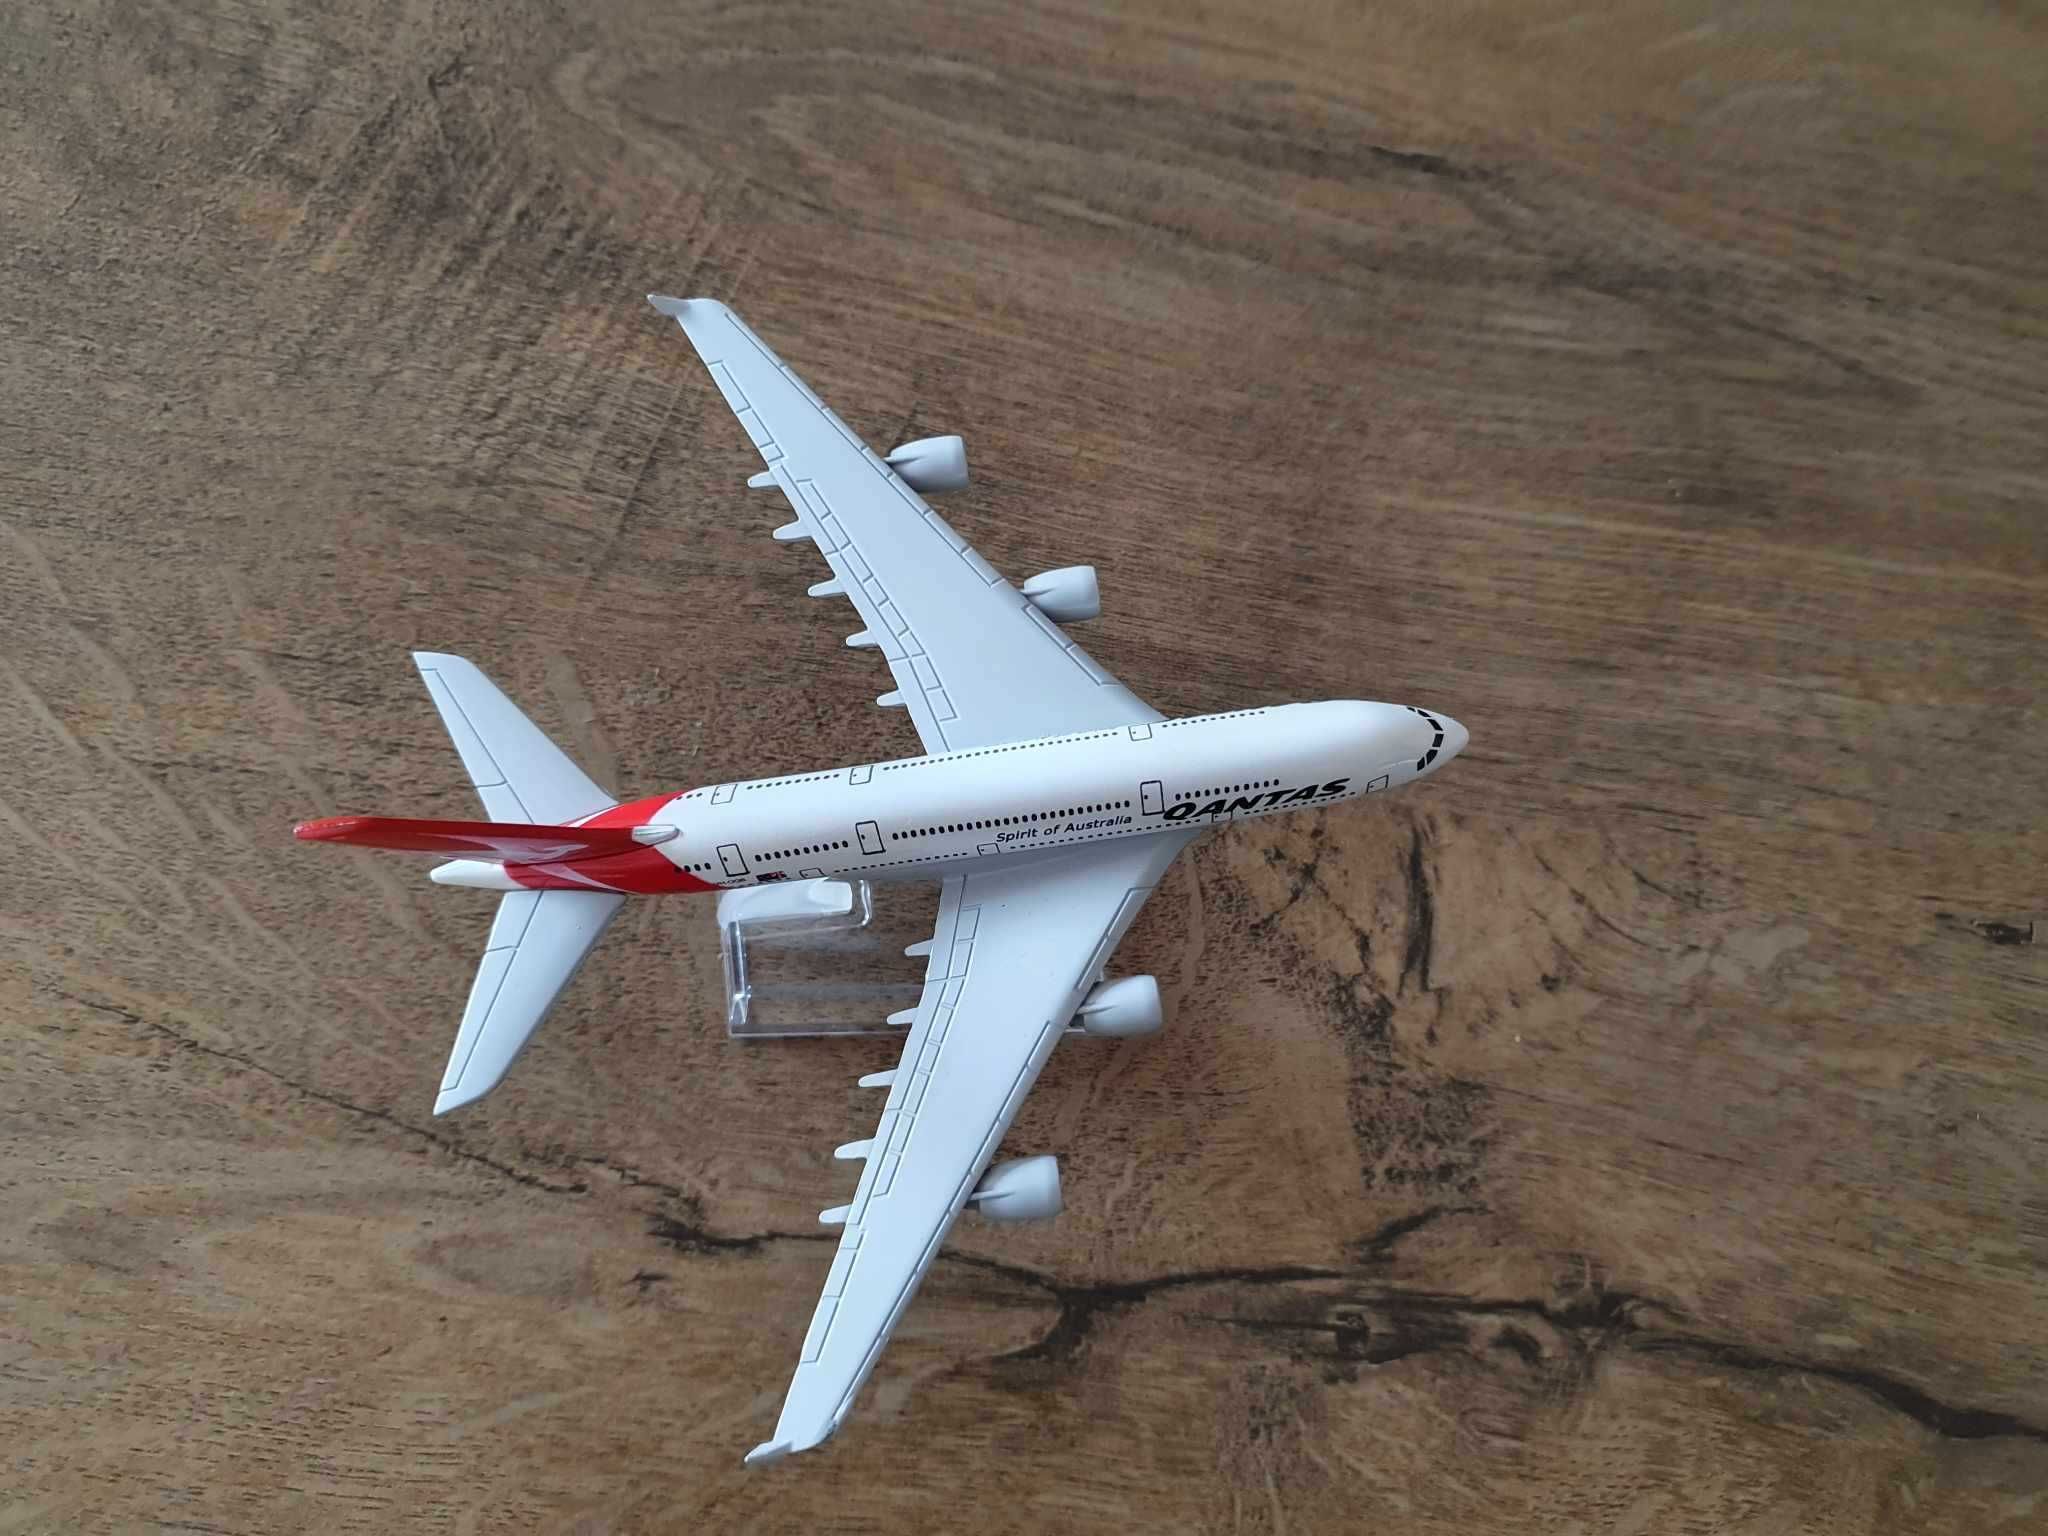 Macheta metalica de avion Qantas | Decoratie | Perfect pt cadou